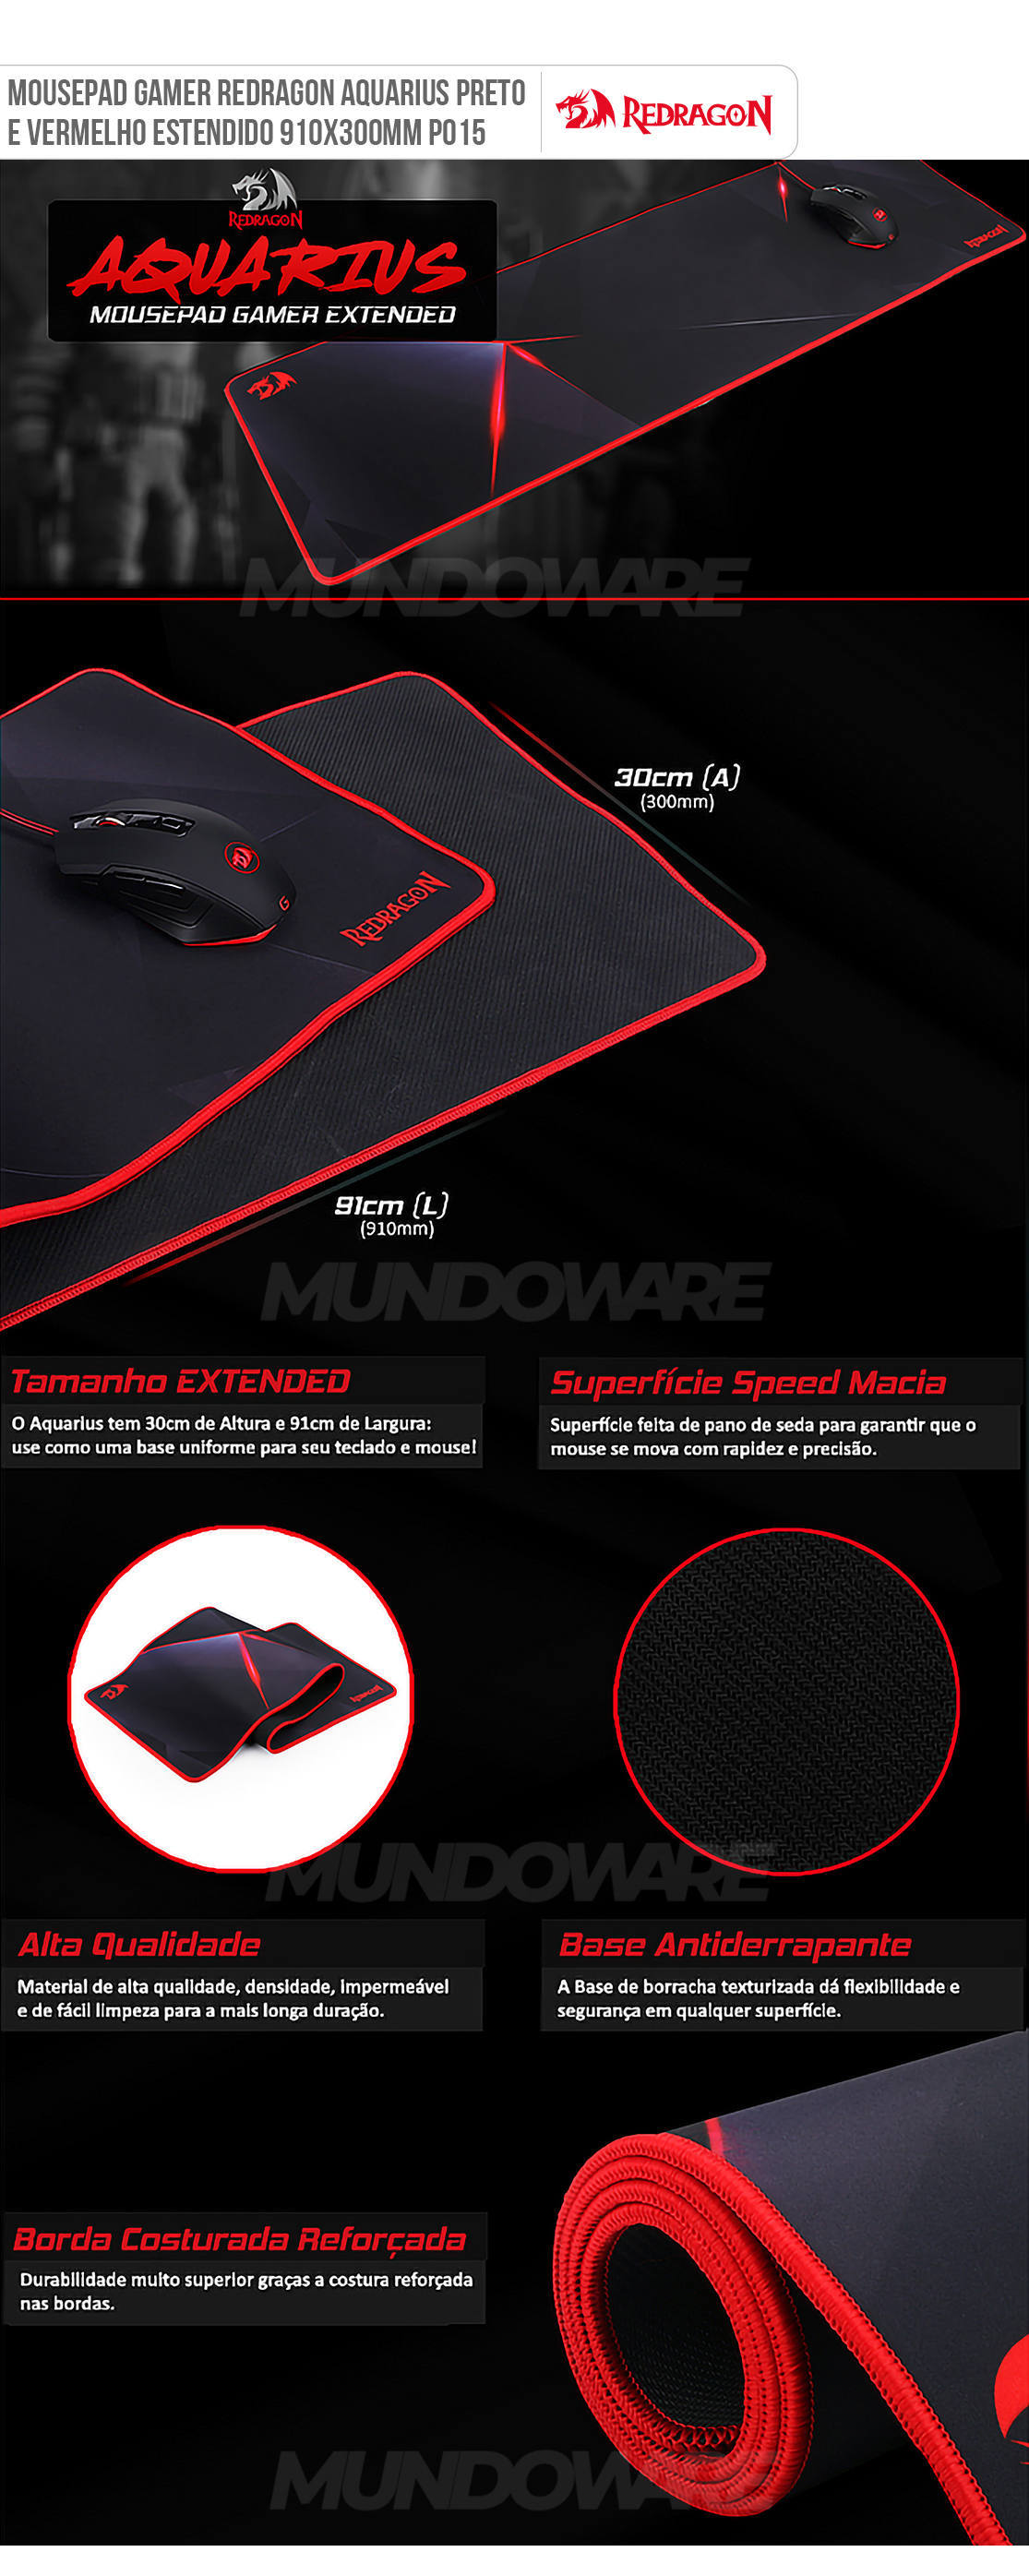 Mousepad Redragon Aquarius 910x300mm Preto e Vermelho Superfície Speed Base Anti-derrapante P015 Gamer